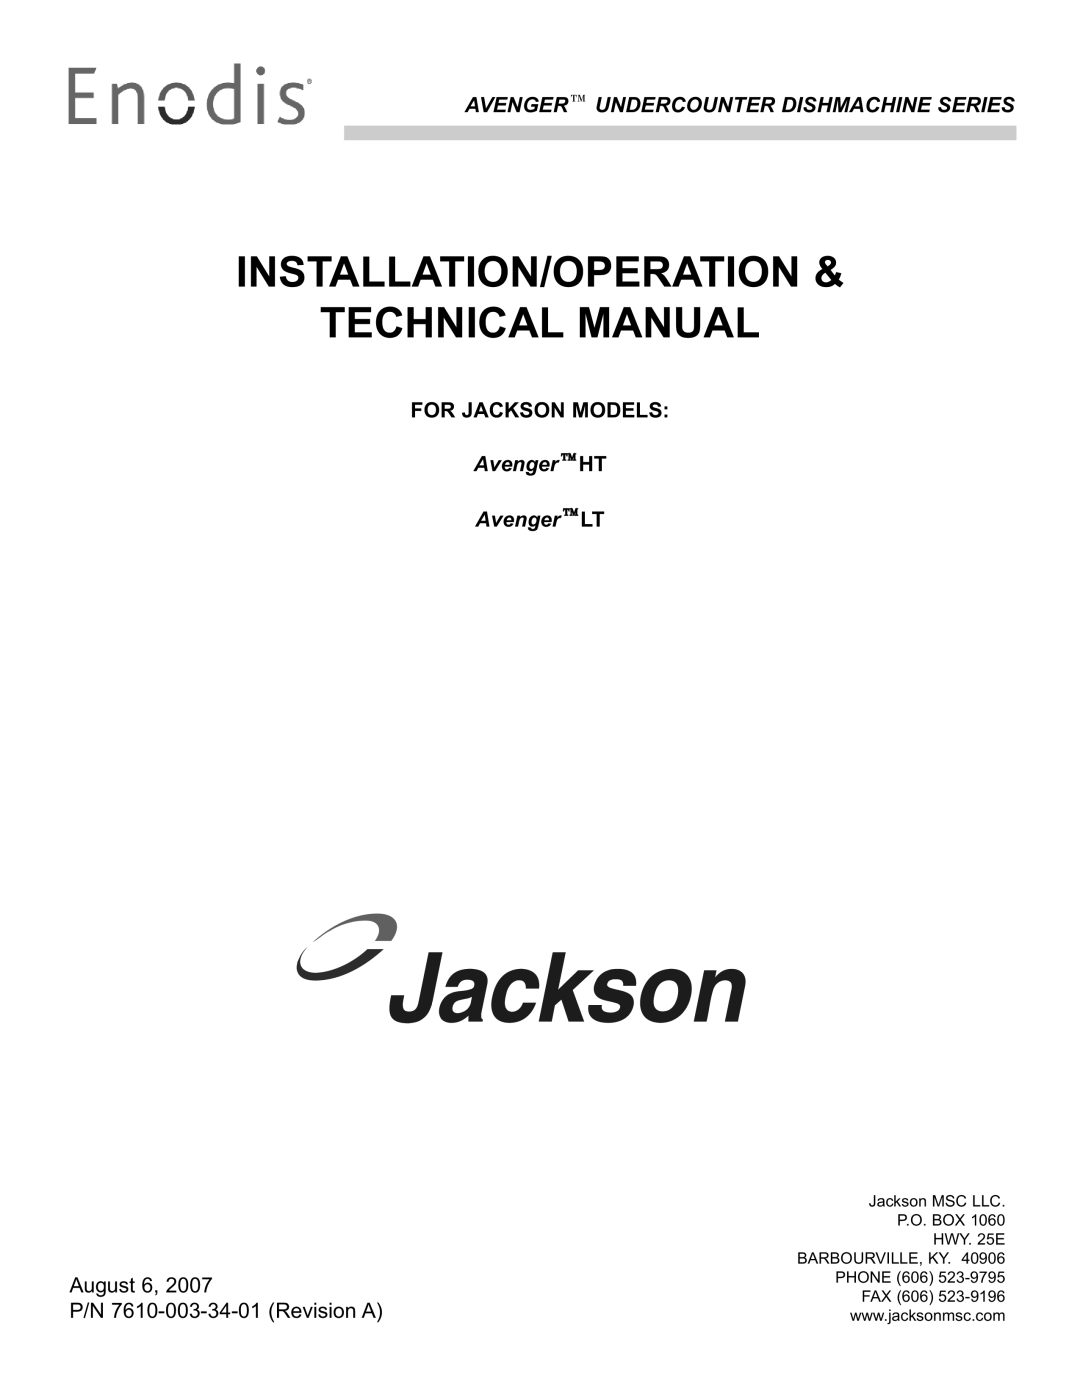 Jackson Avenger HT technical manual Installation/Operation Technical Manual, For Jackson Models, AvengerHT AvengerLT 